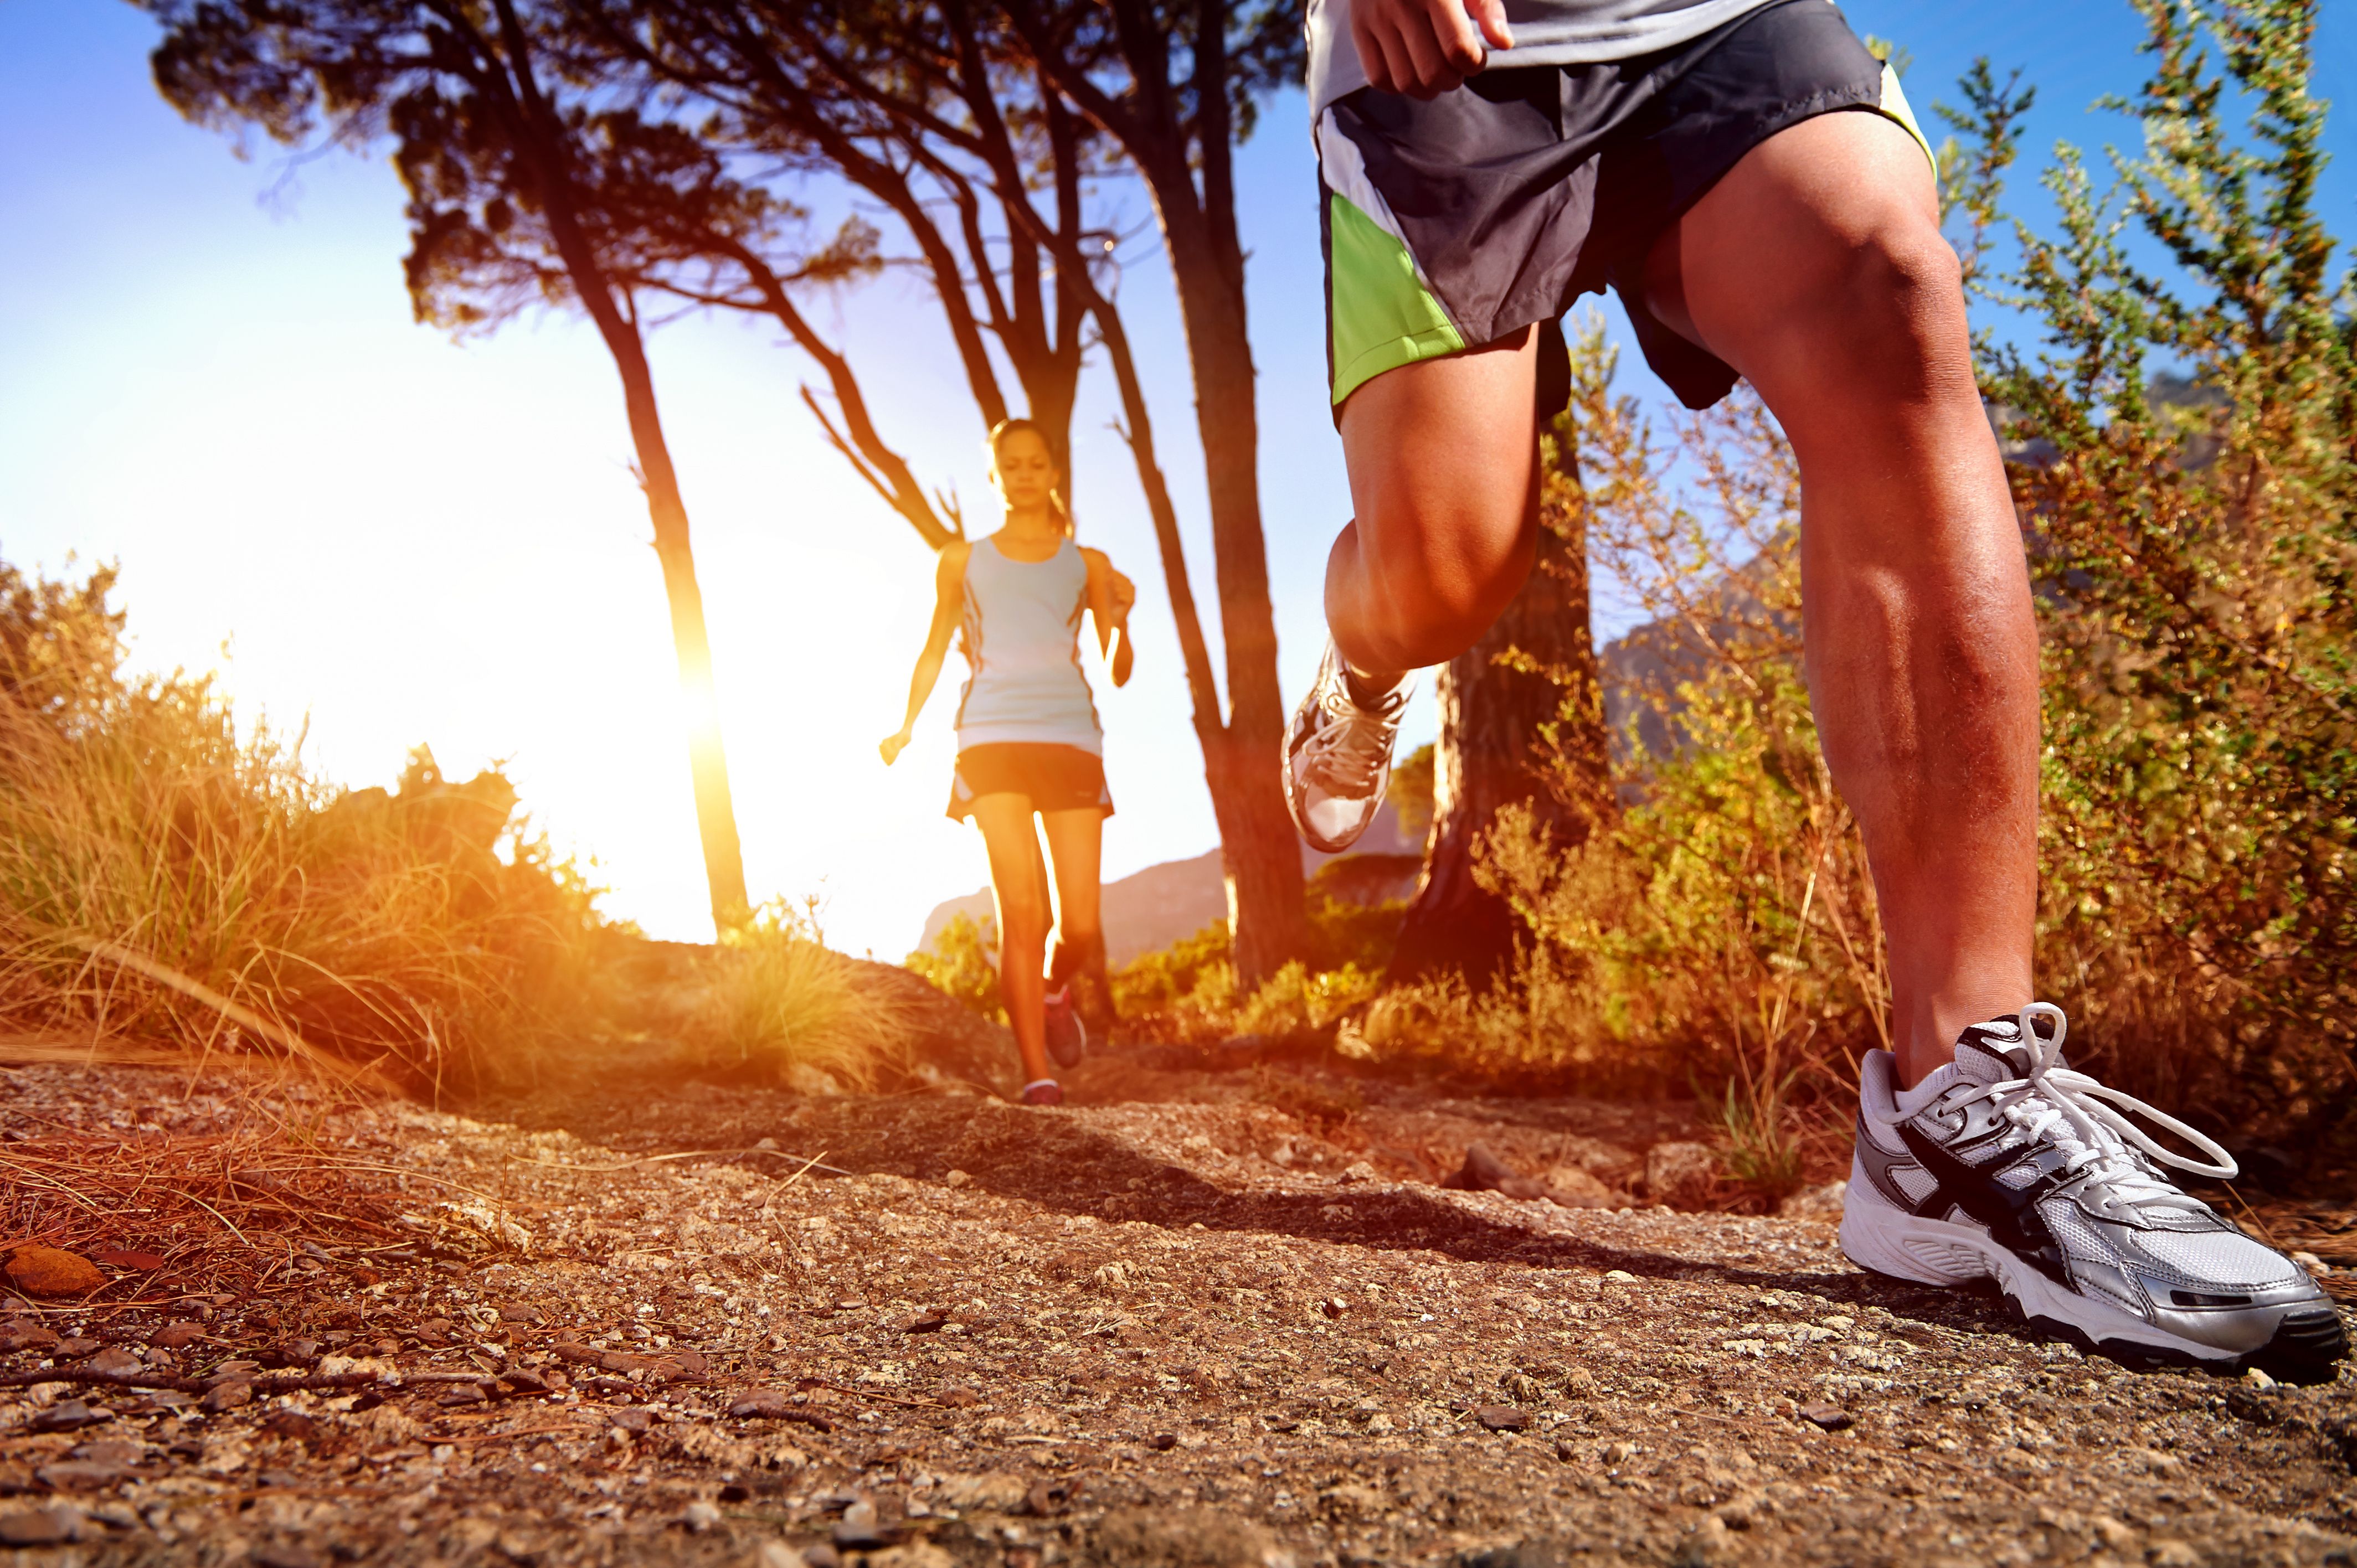 Kilenc tipp ahhoz, hogy miképpen égethet több zsírt futás közben!